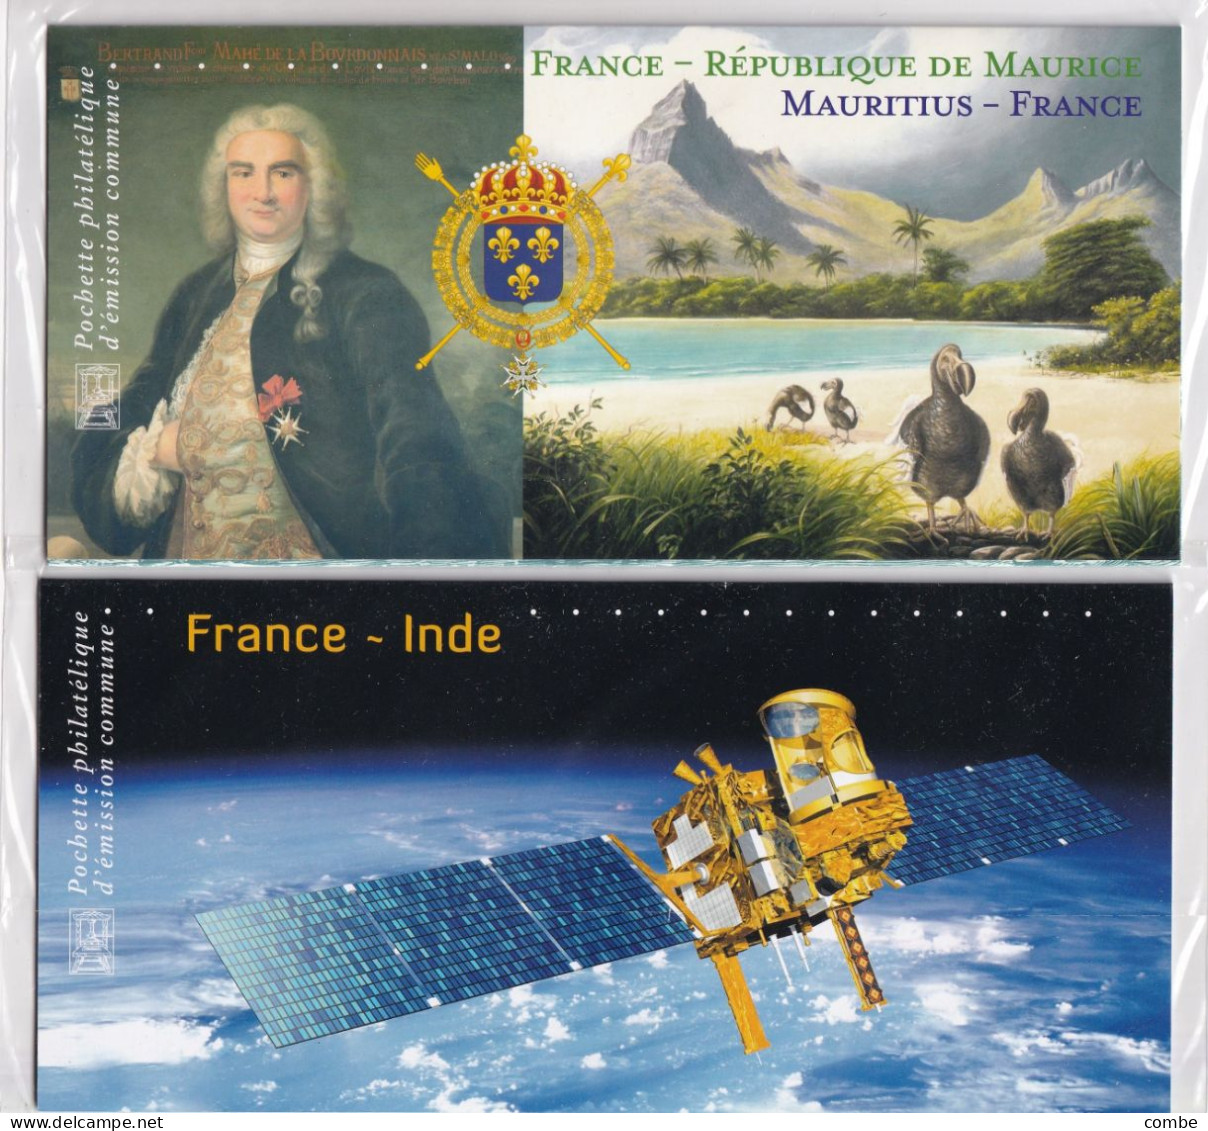 2 BLOCS SOUVENIR. NEUF SOUS BLISTER. FRANCE-INDE 2010, FRANCE-MAURICE 2015 - Bloques Souvenir